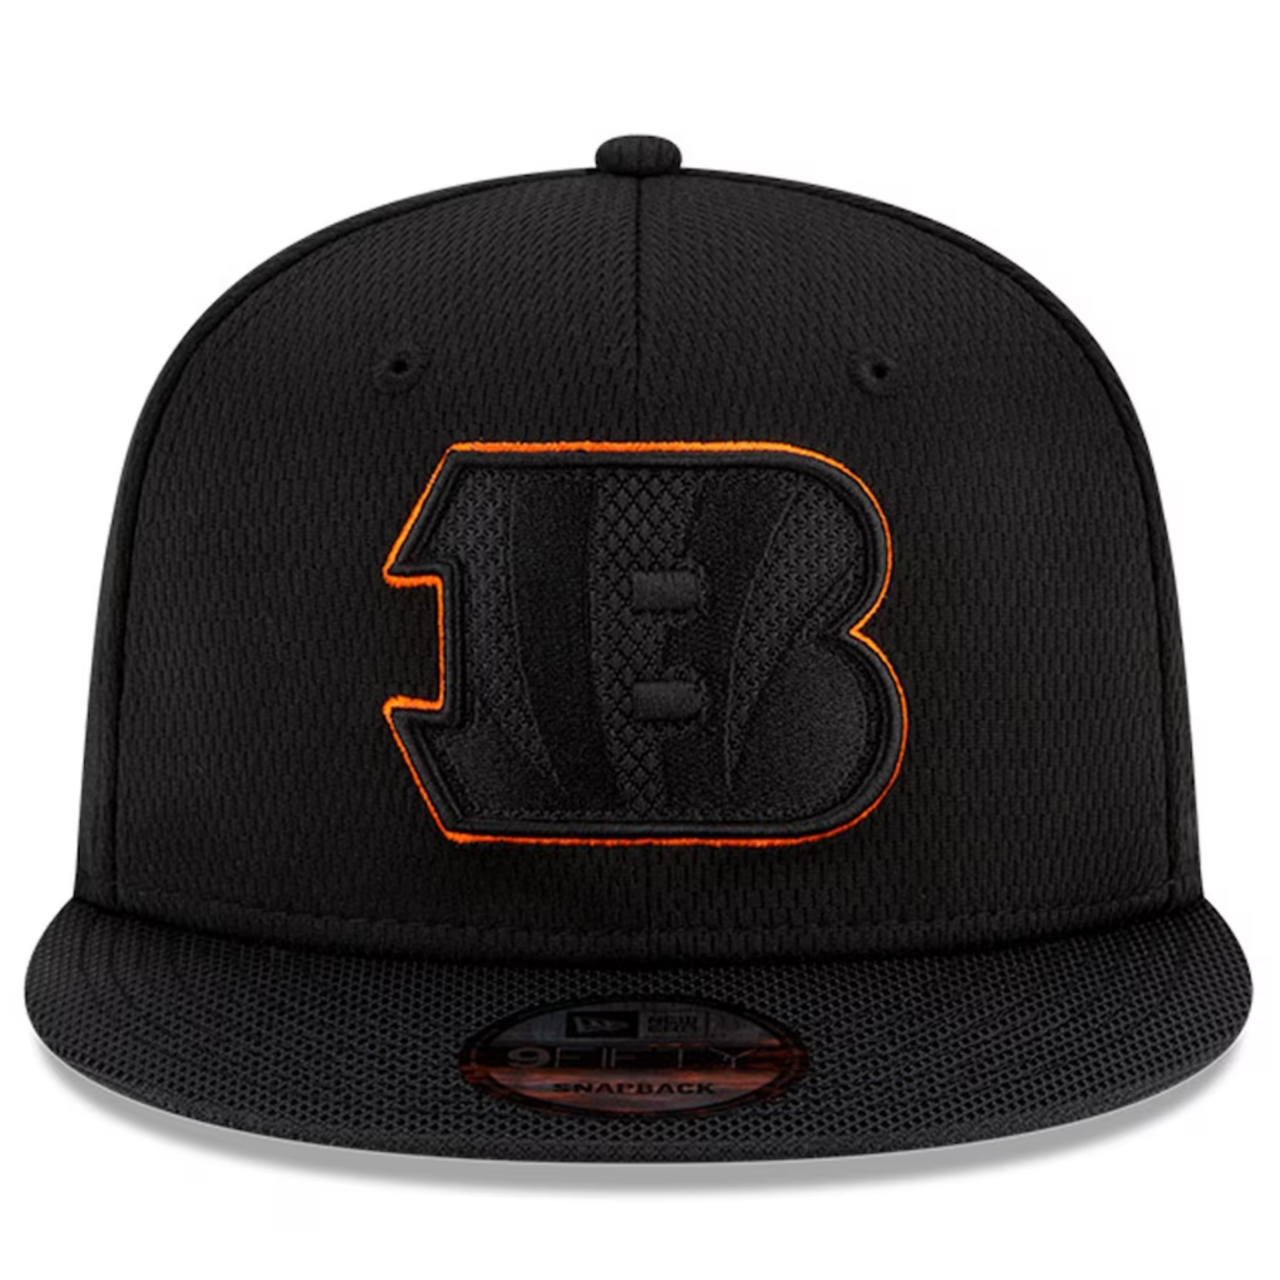 Cincinnati Bengals Hats, Bengals Snapbacks, Sideline Caps